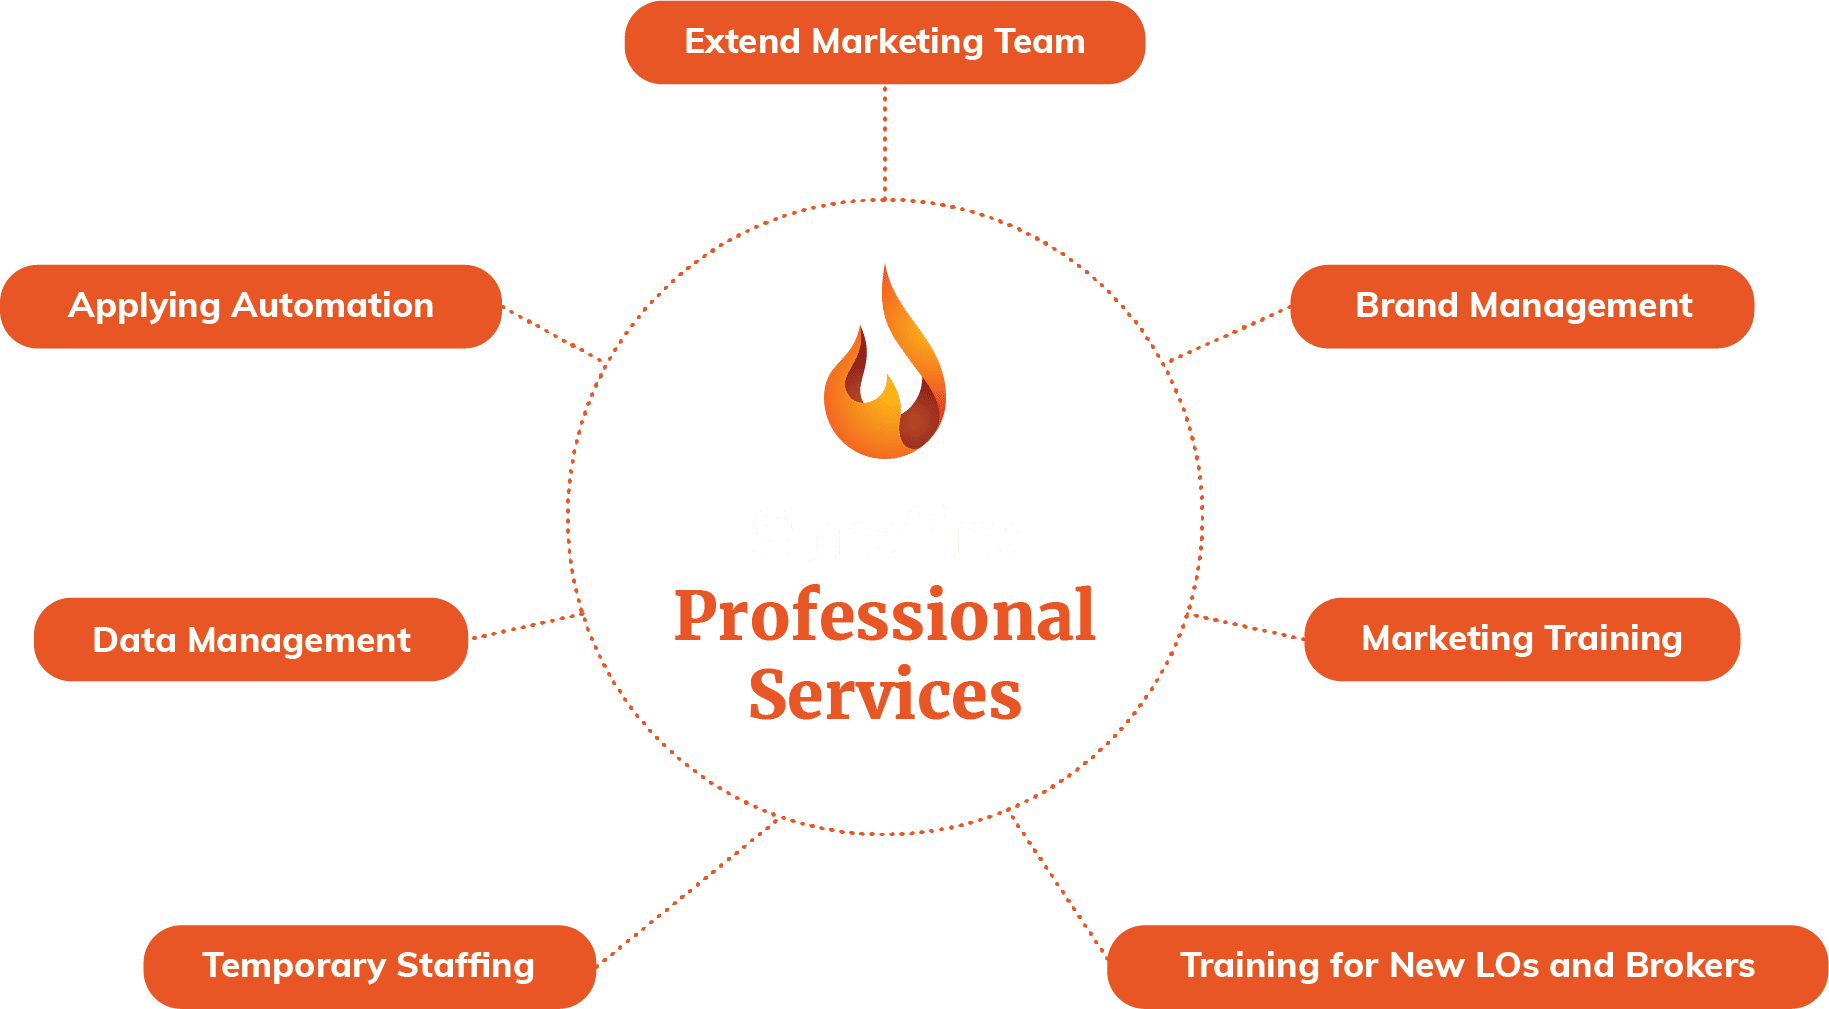 Surefire Professional Services